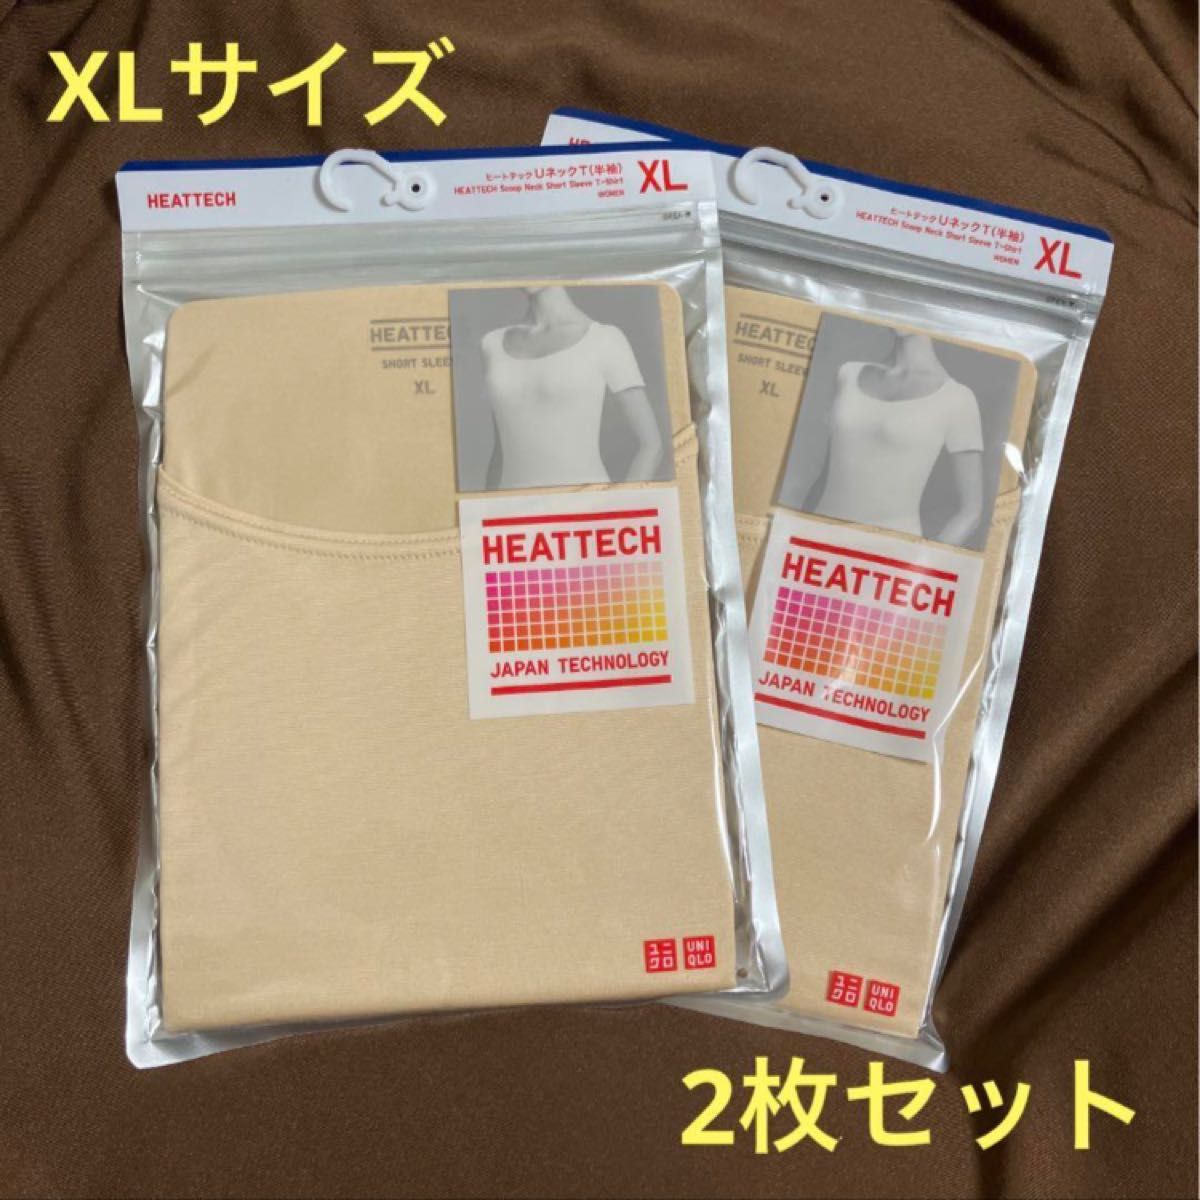 【新品未使用】ユニクロ WOMEN ヒートテックUネックT XL (2枚セット)